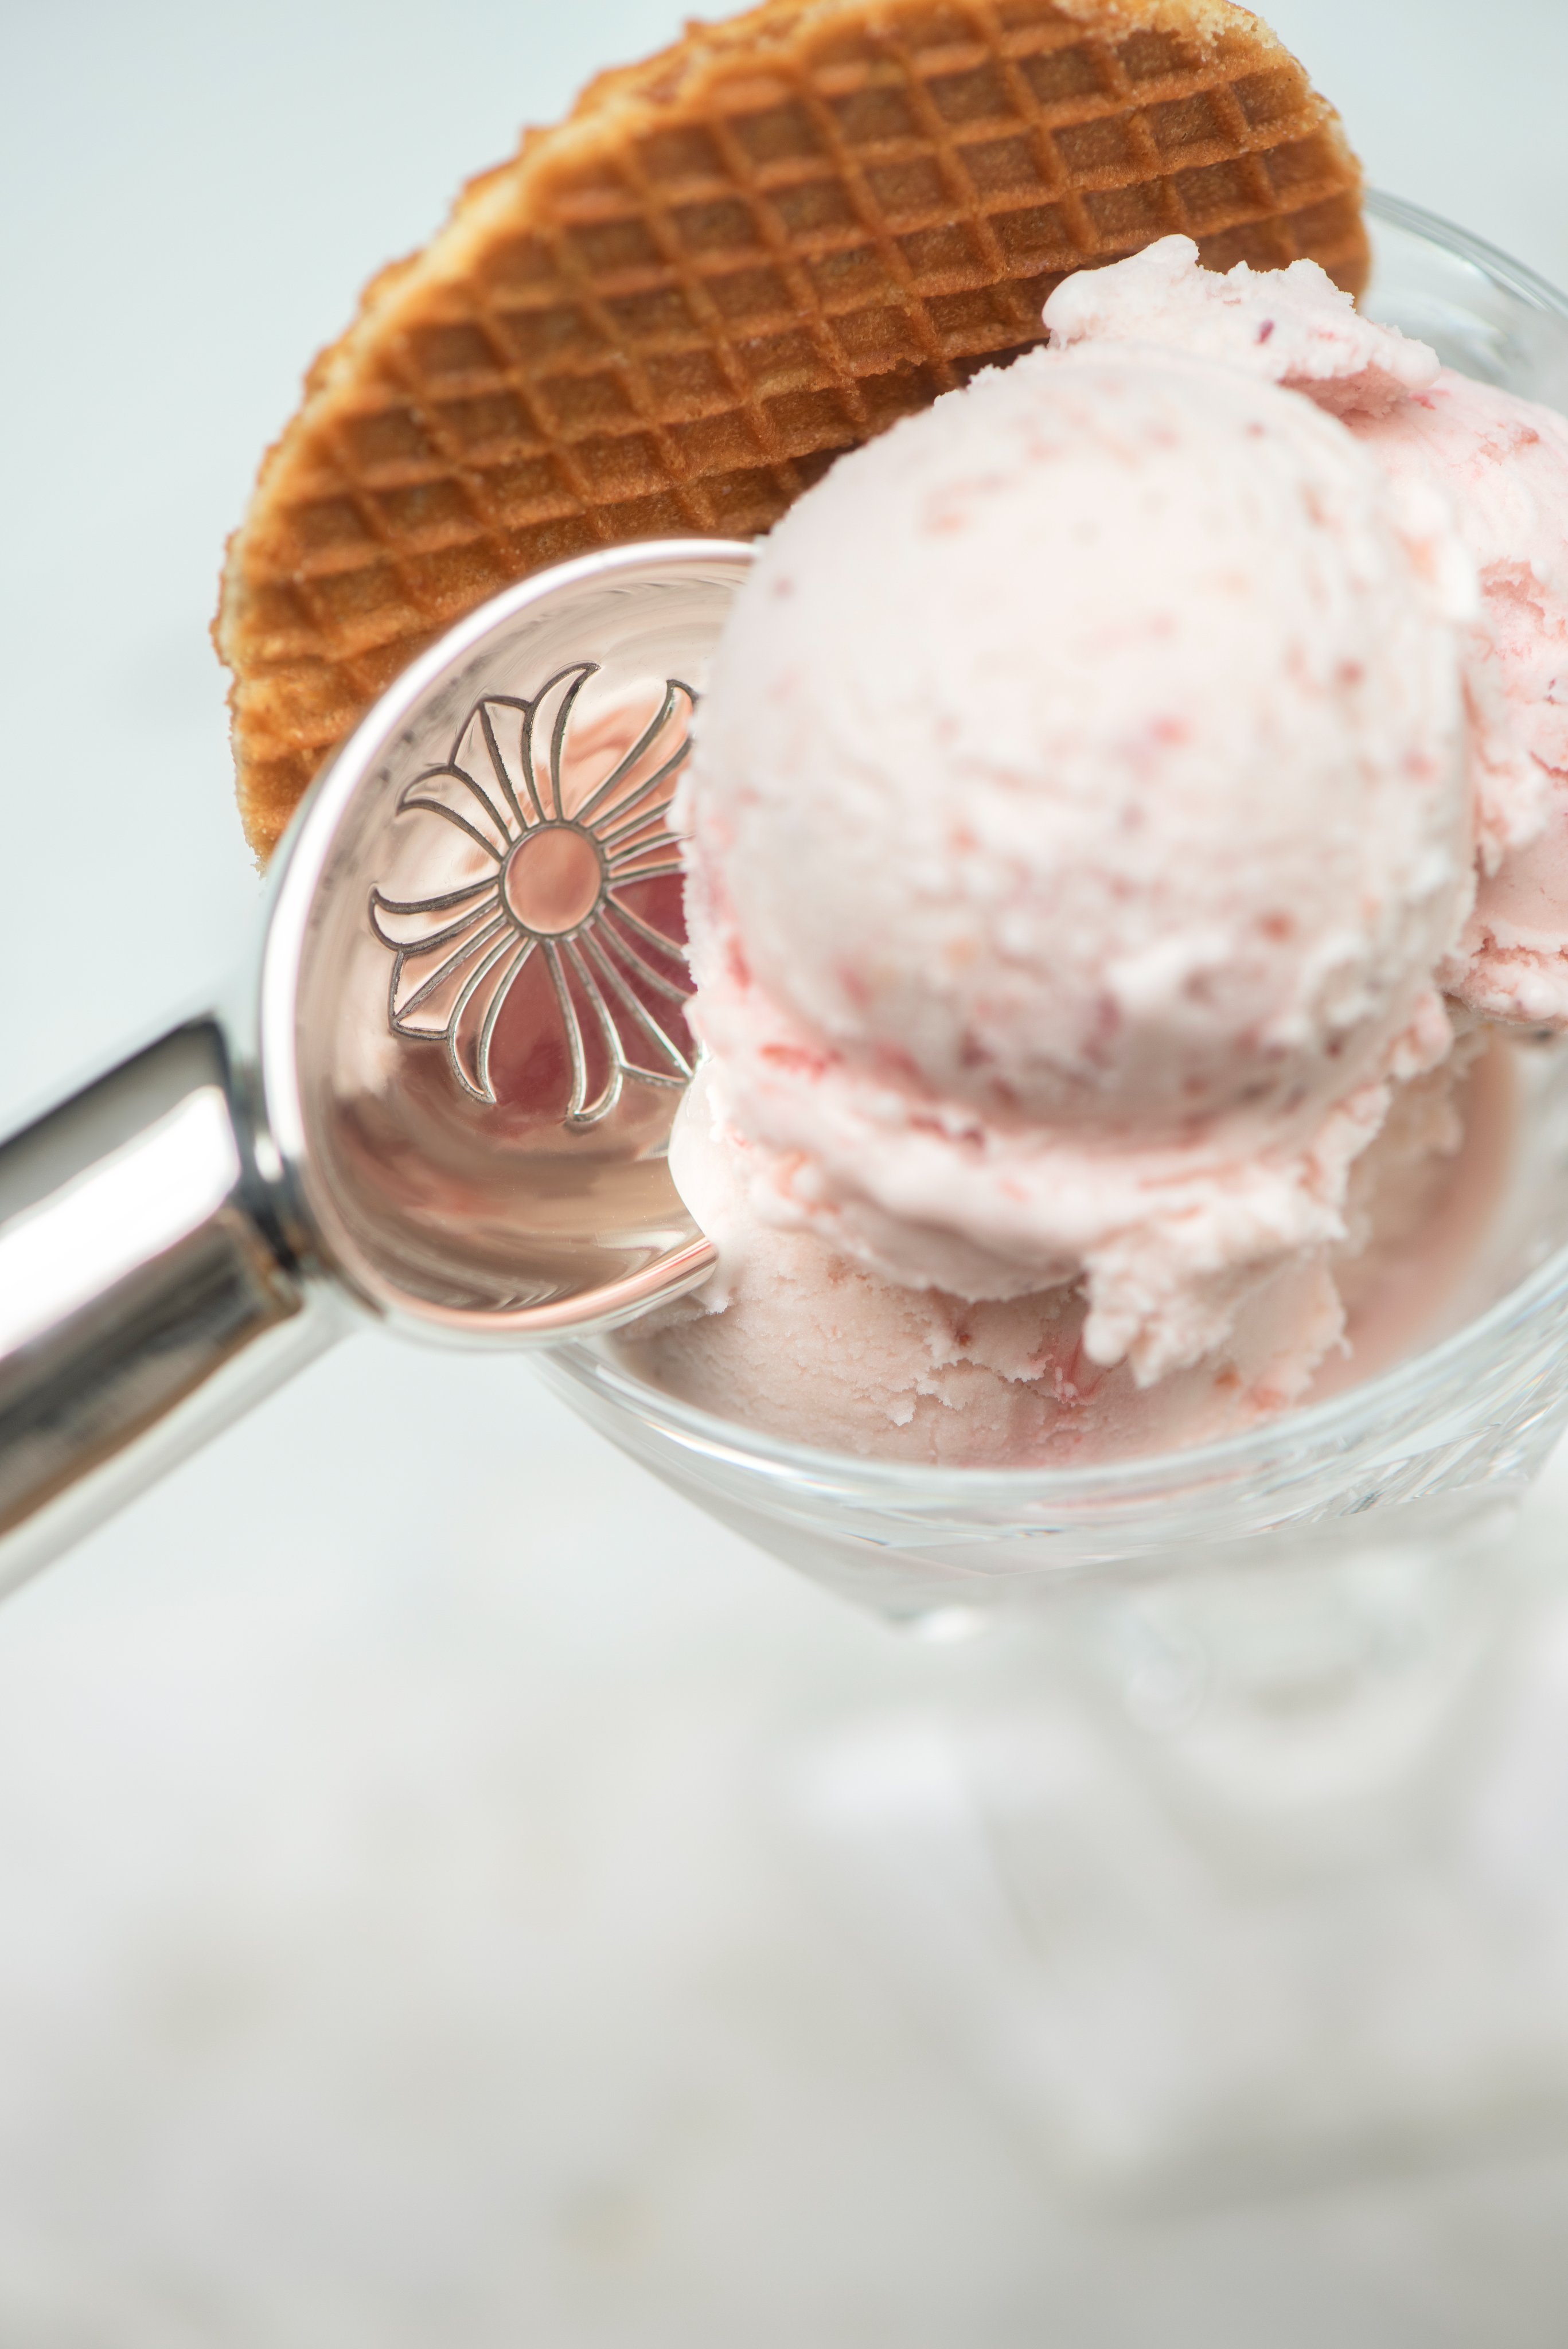 Chrome Hearts Ice Cream Scooper Release